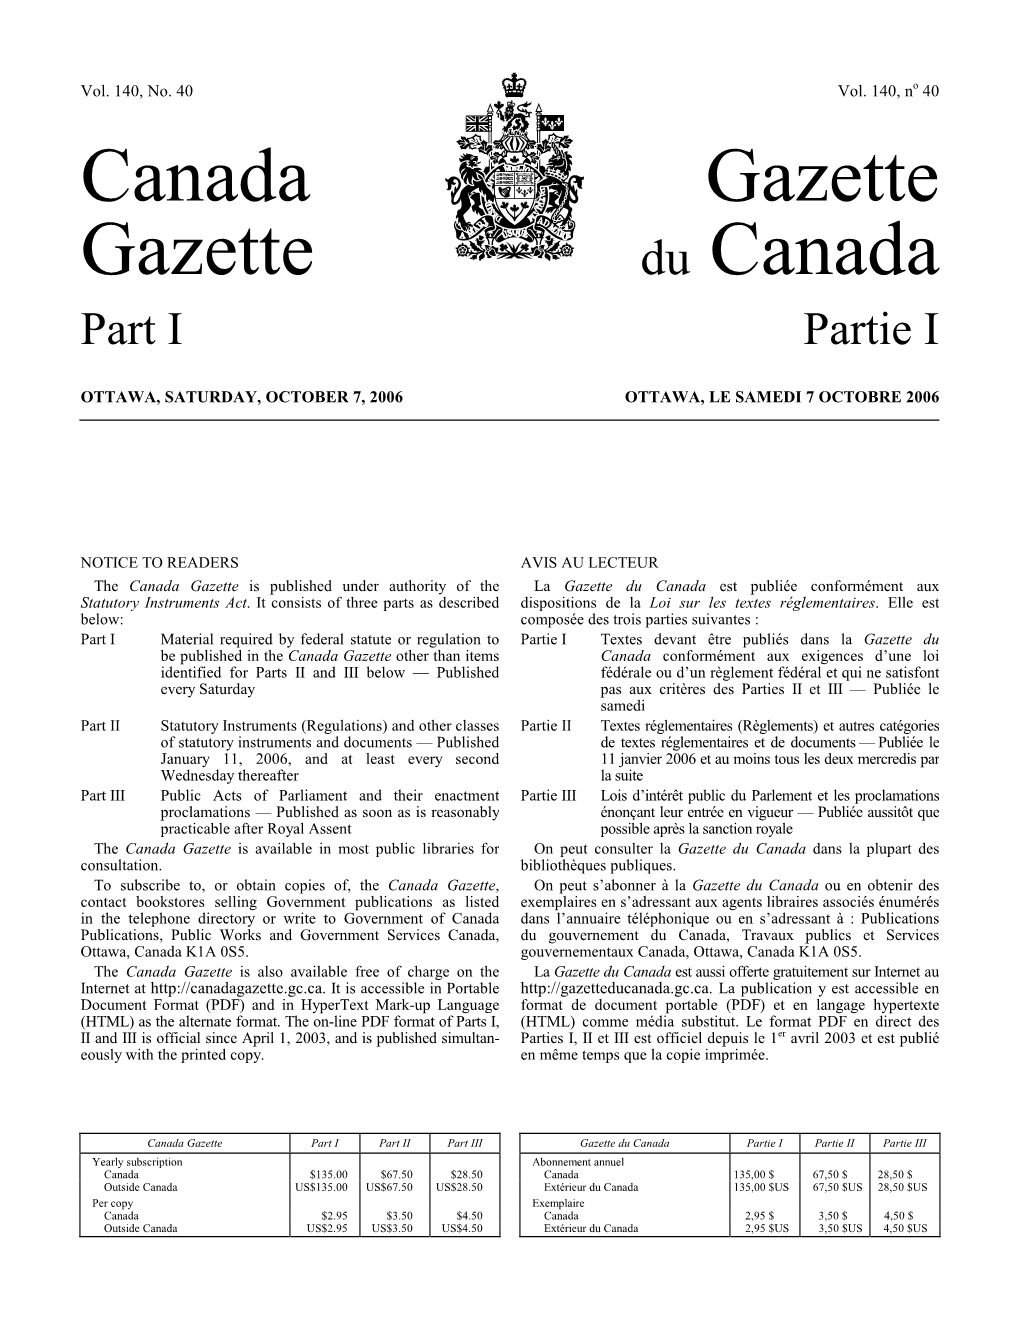 Canada Gazette, Part I, on Projets De Loi D’Intérêt Privé a Été Publié Dans La Partie I De La April 8, 2006